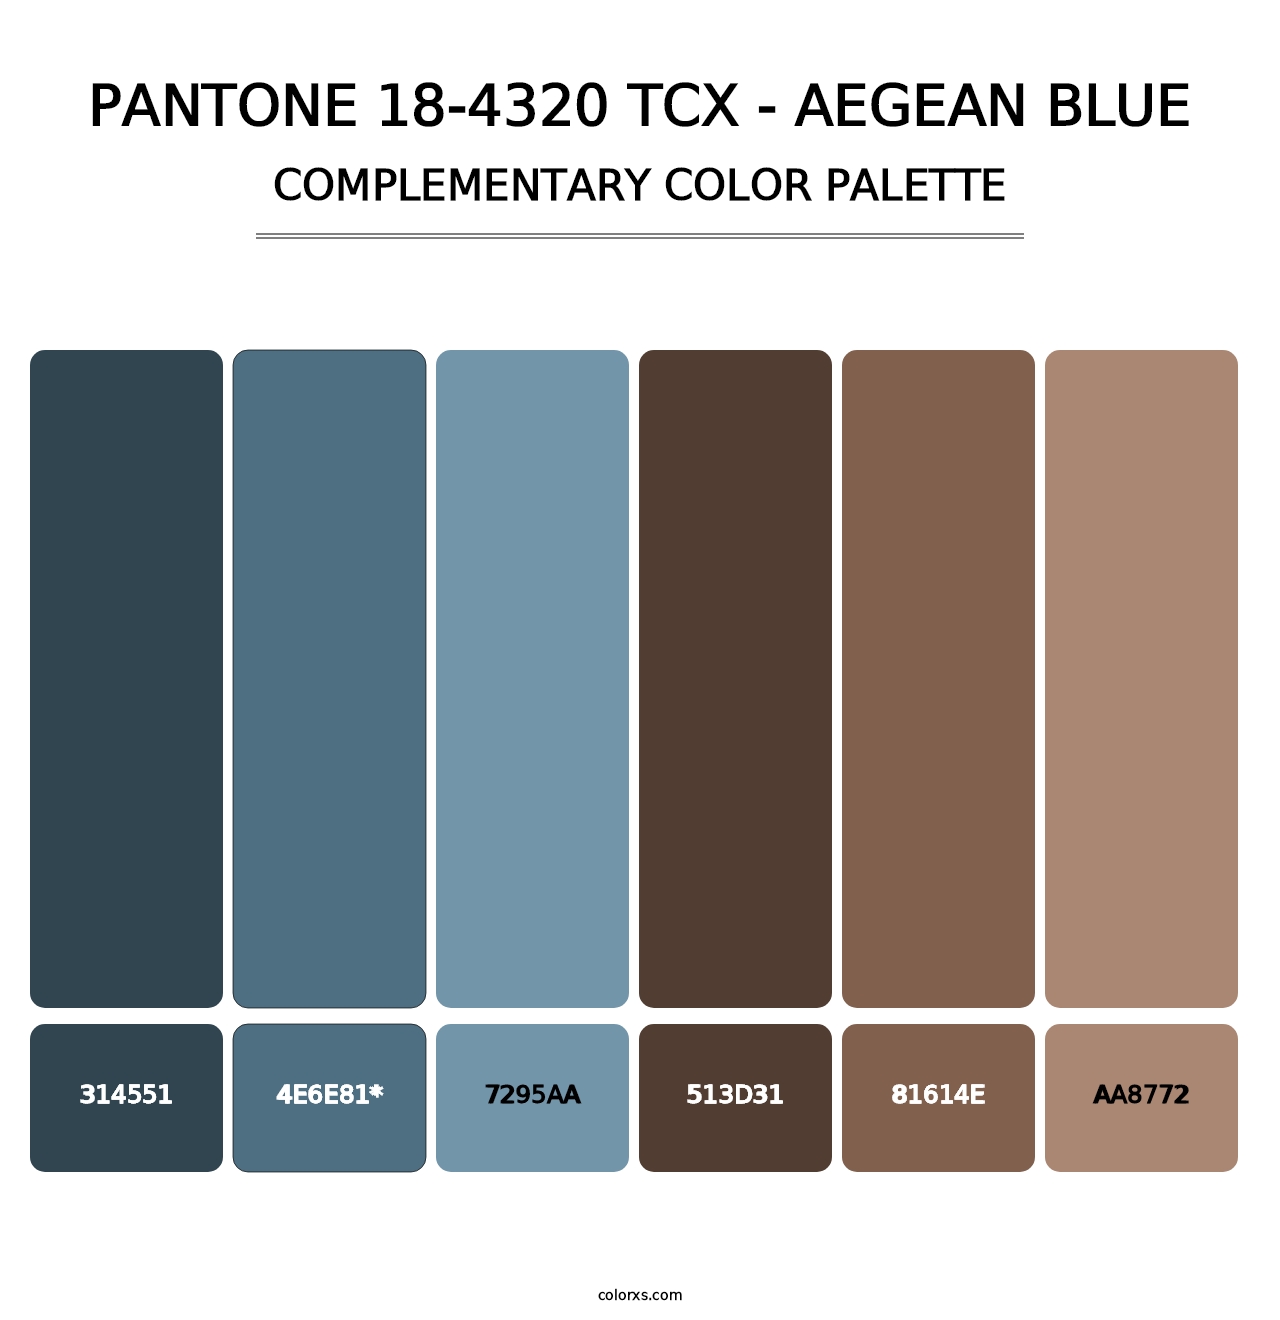 PANTONE 18-4320 TCX - Aegean Blue - Complementary Color Palette